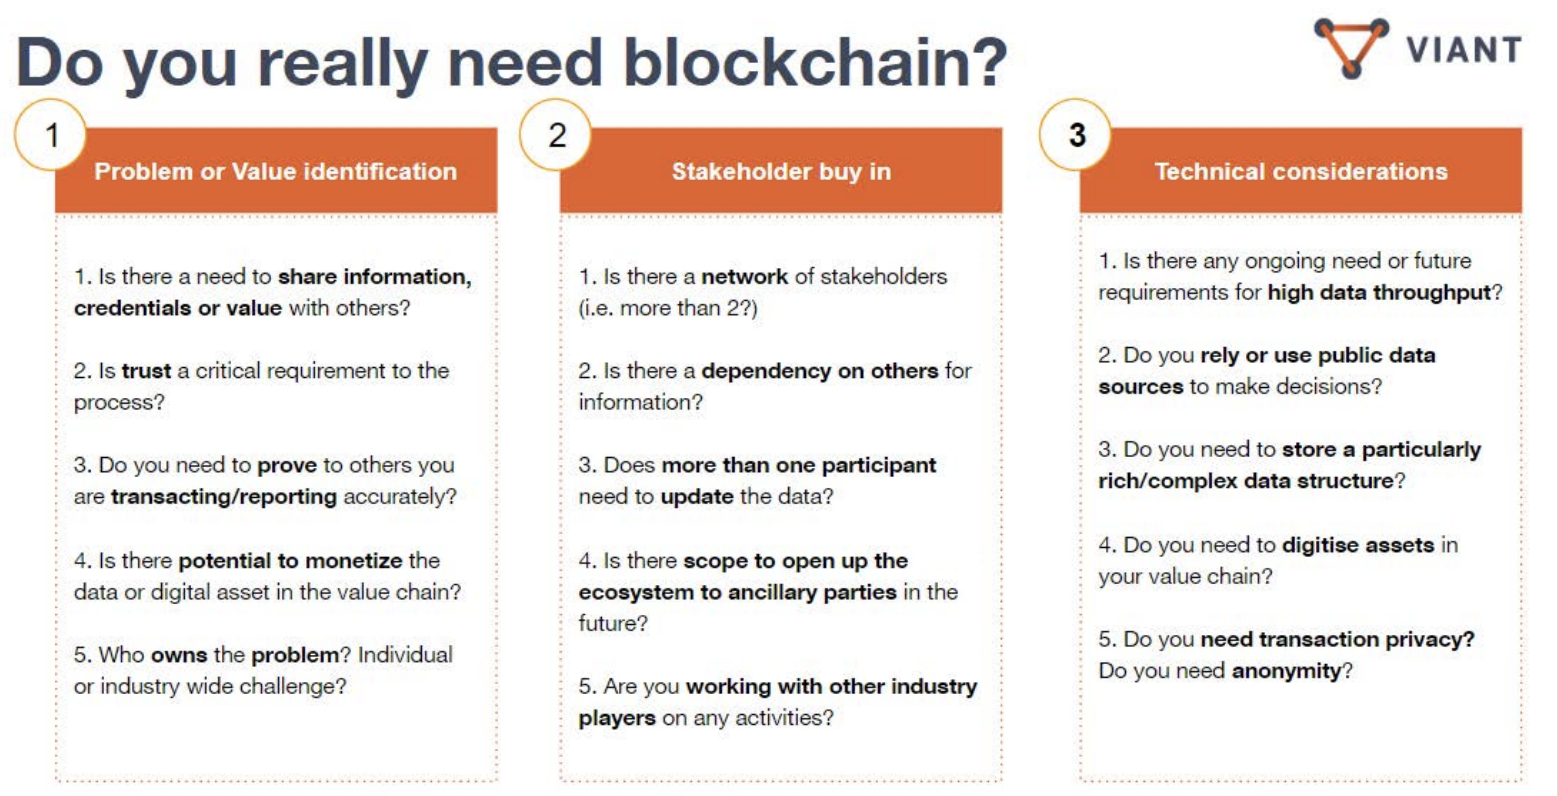 image: do you really need blockchain?